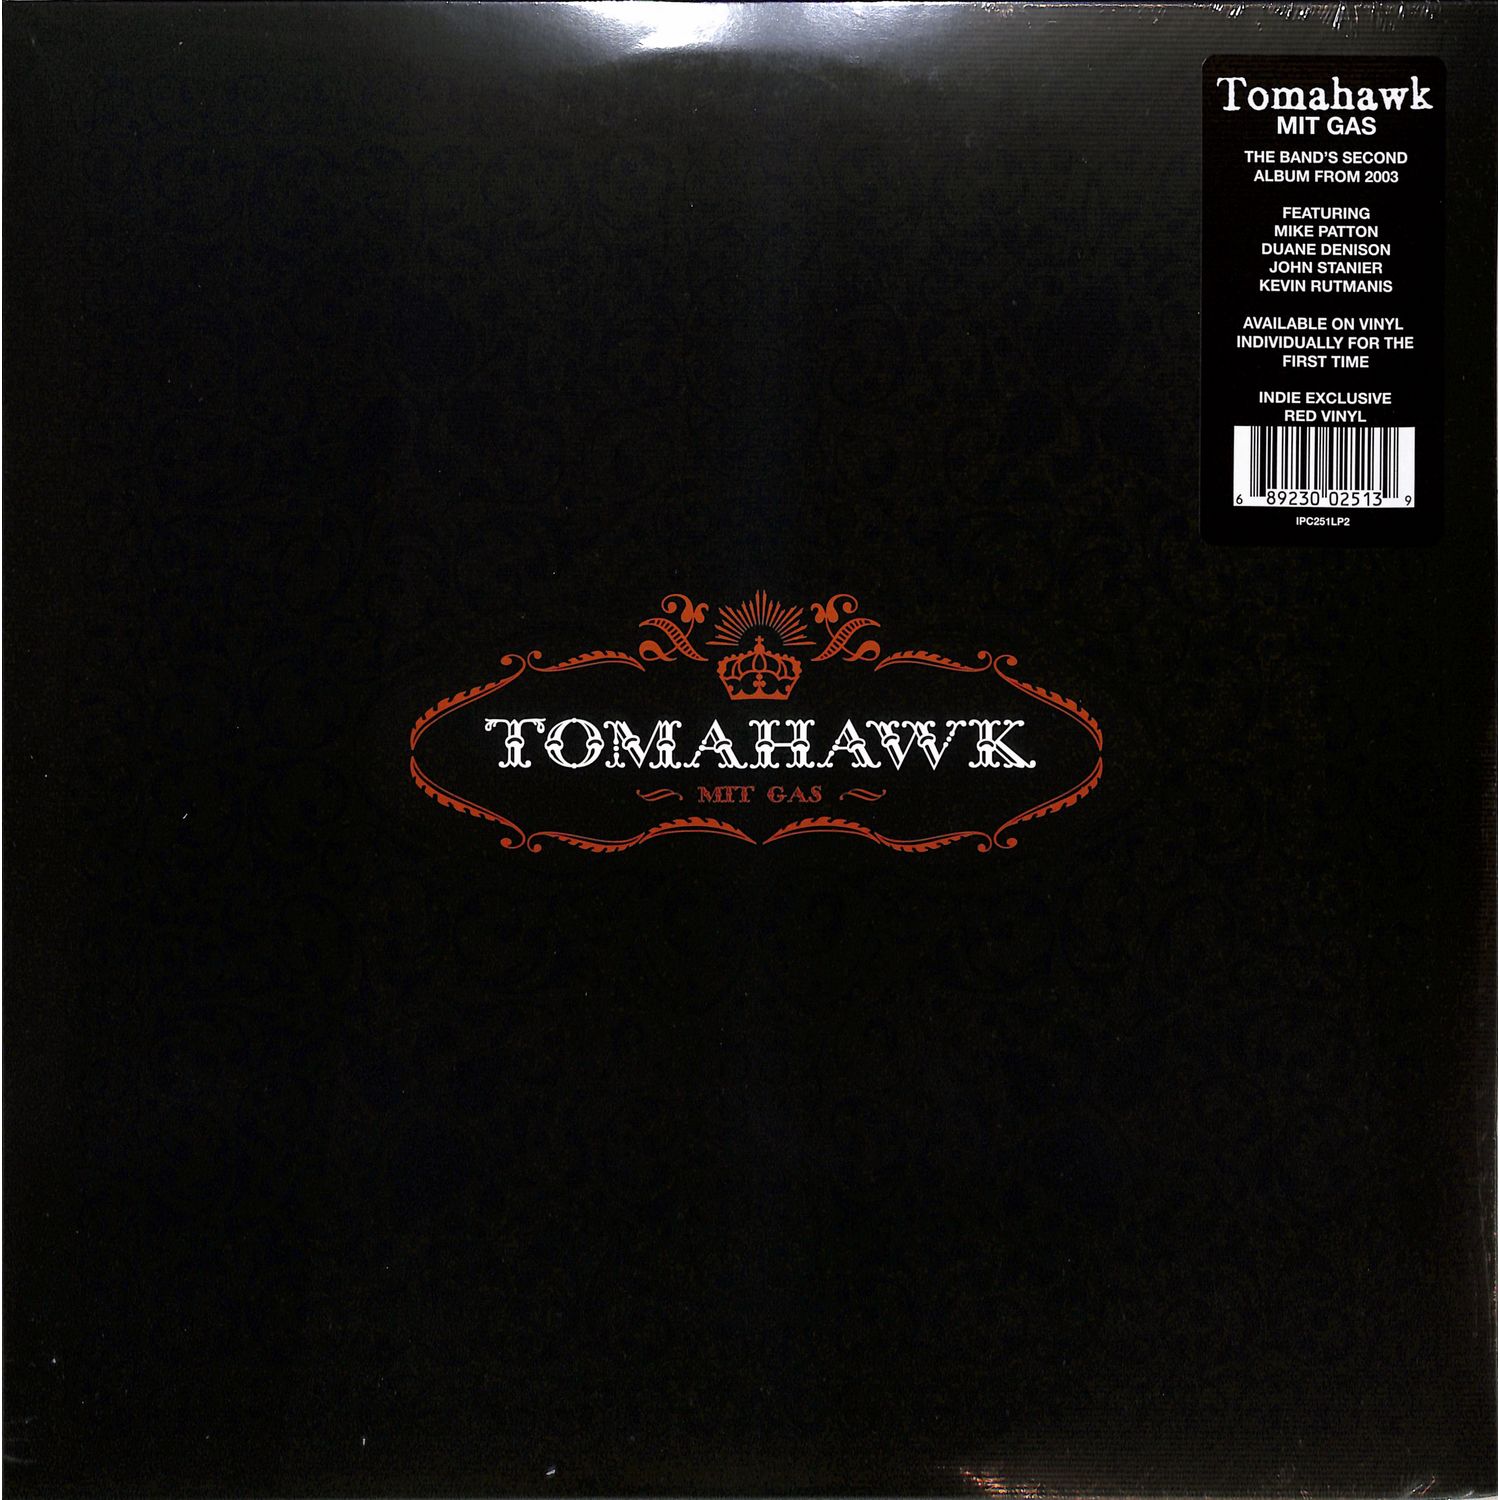 Tomahawk - MIT GAS 